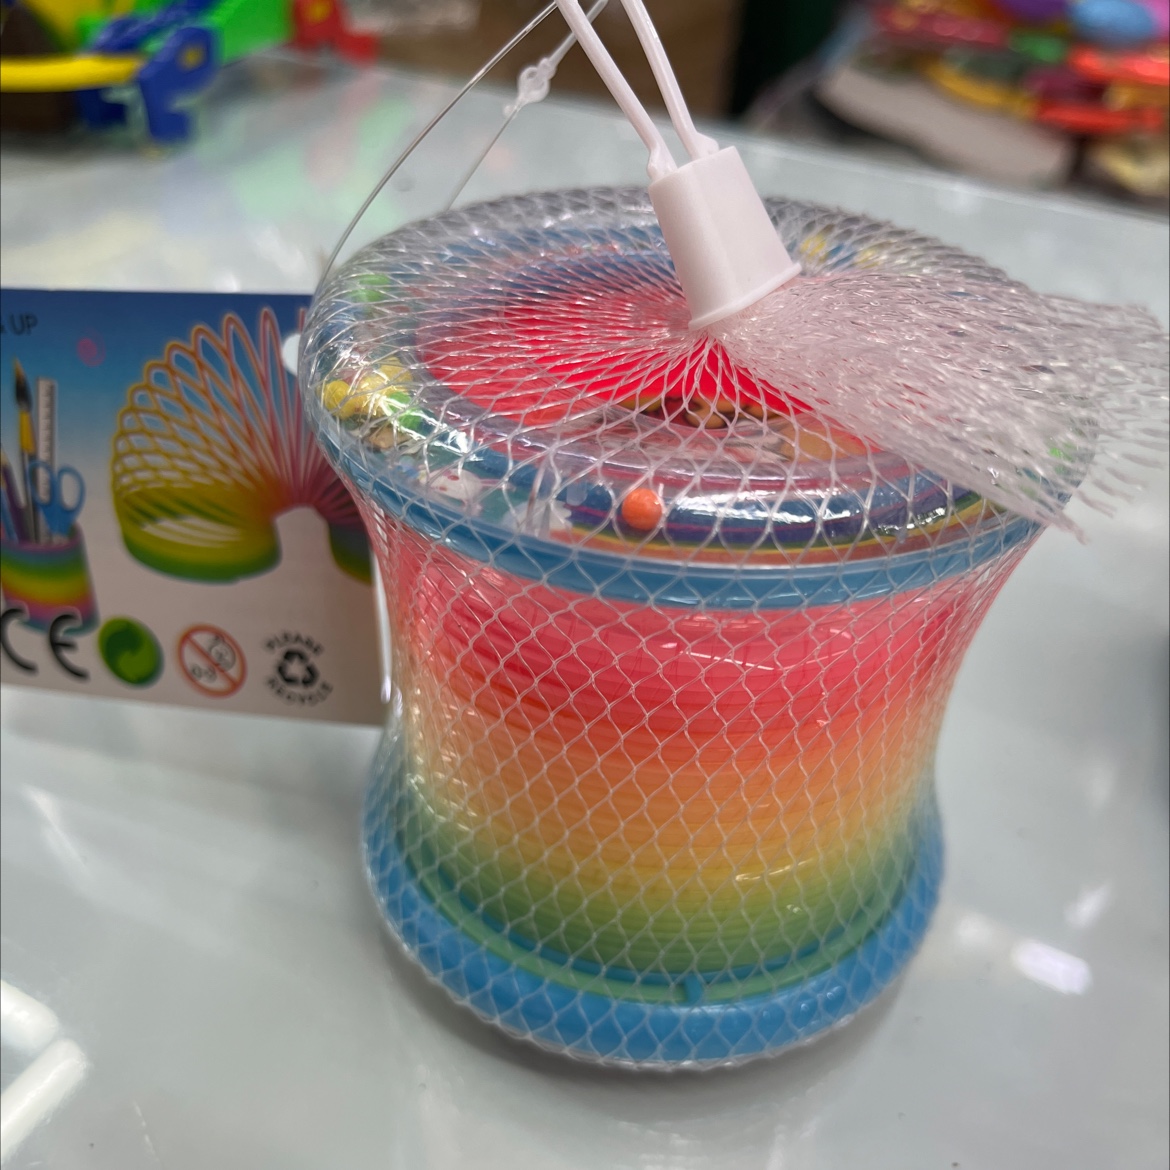 塑料制品两圈彩虹圈塑料玩具儿童玩具